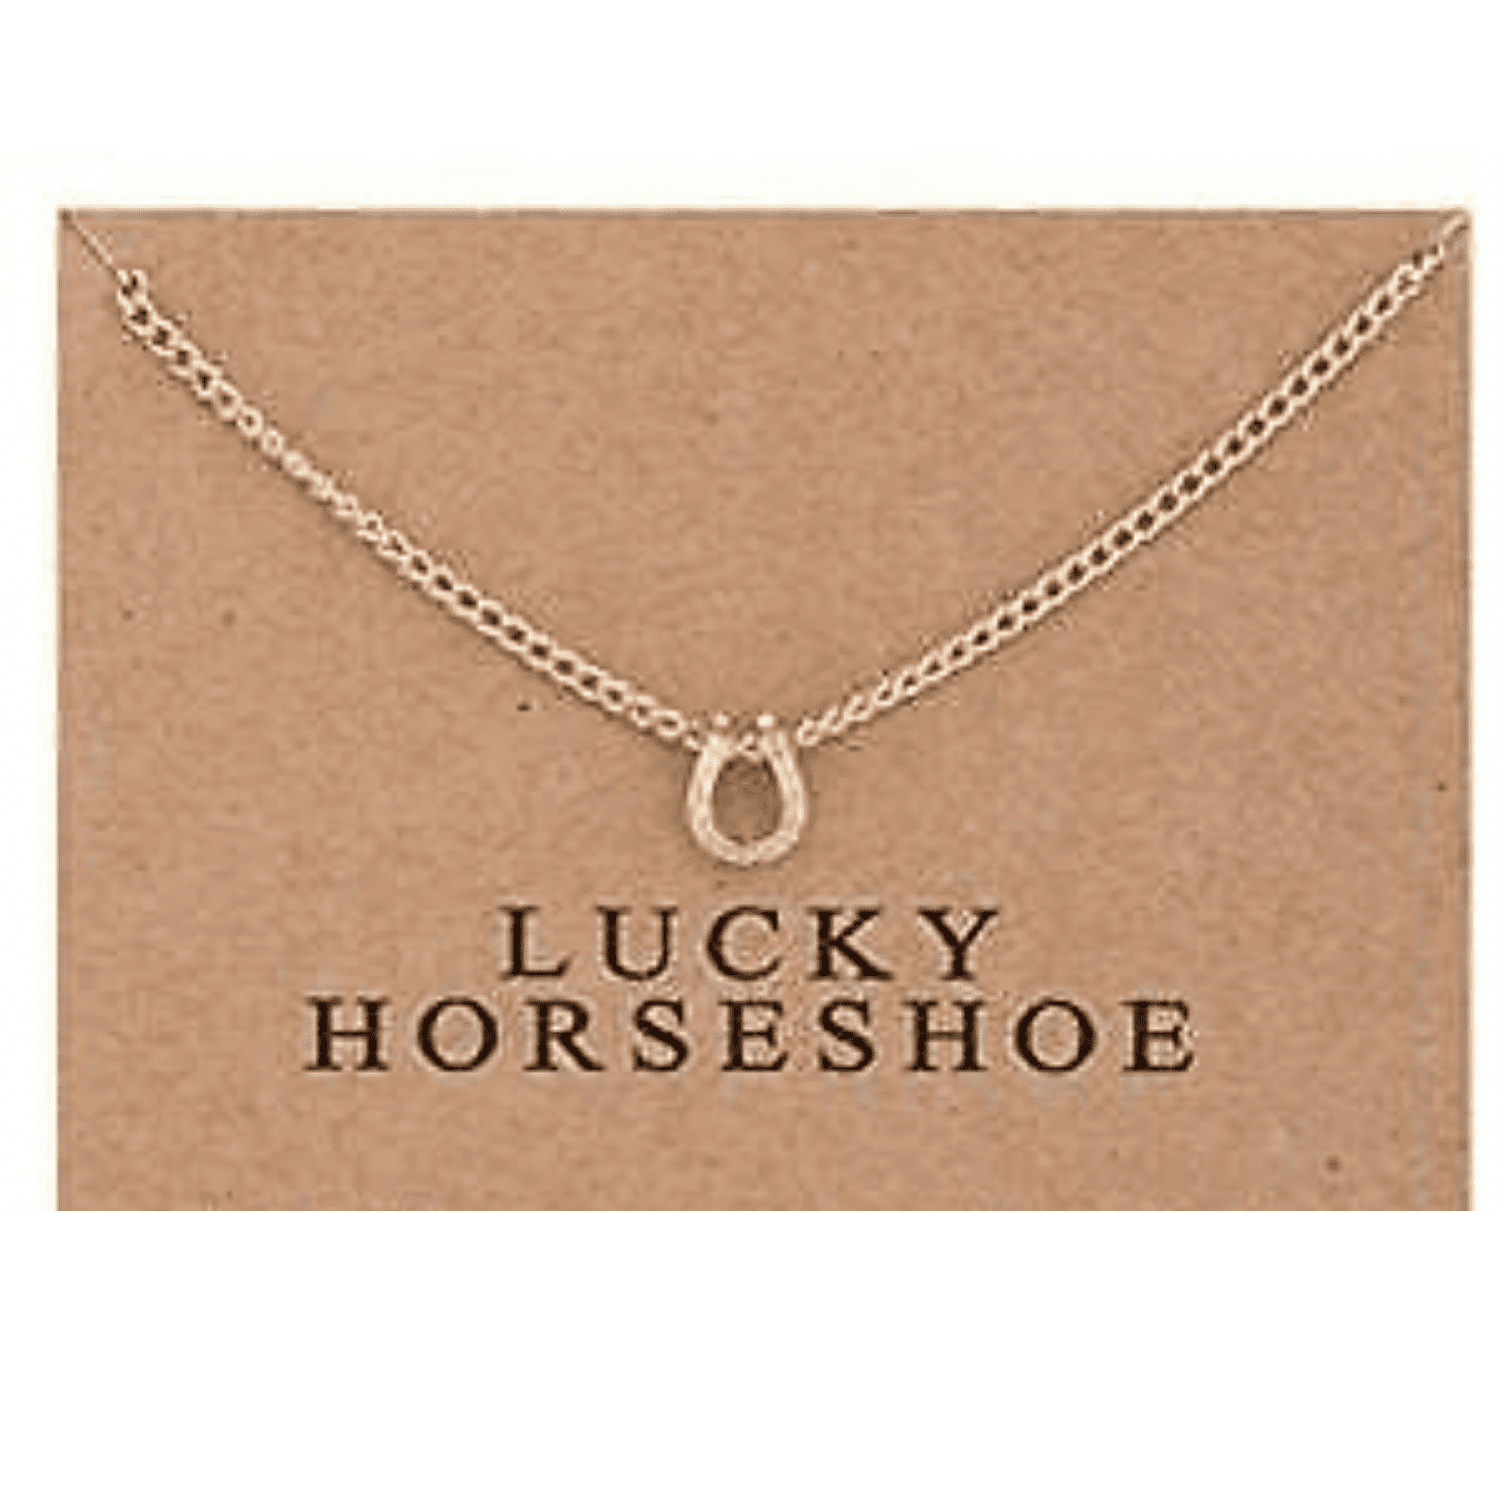 Horseshoe Necklace Lucky Horseshoe Fashion Jewelry Gold 